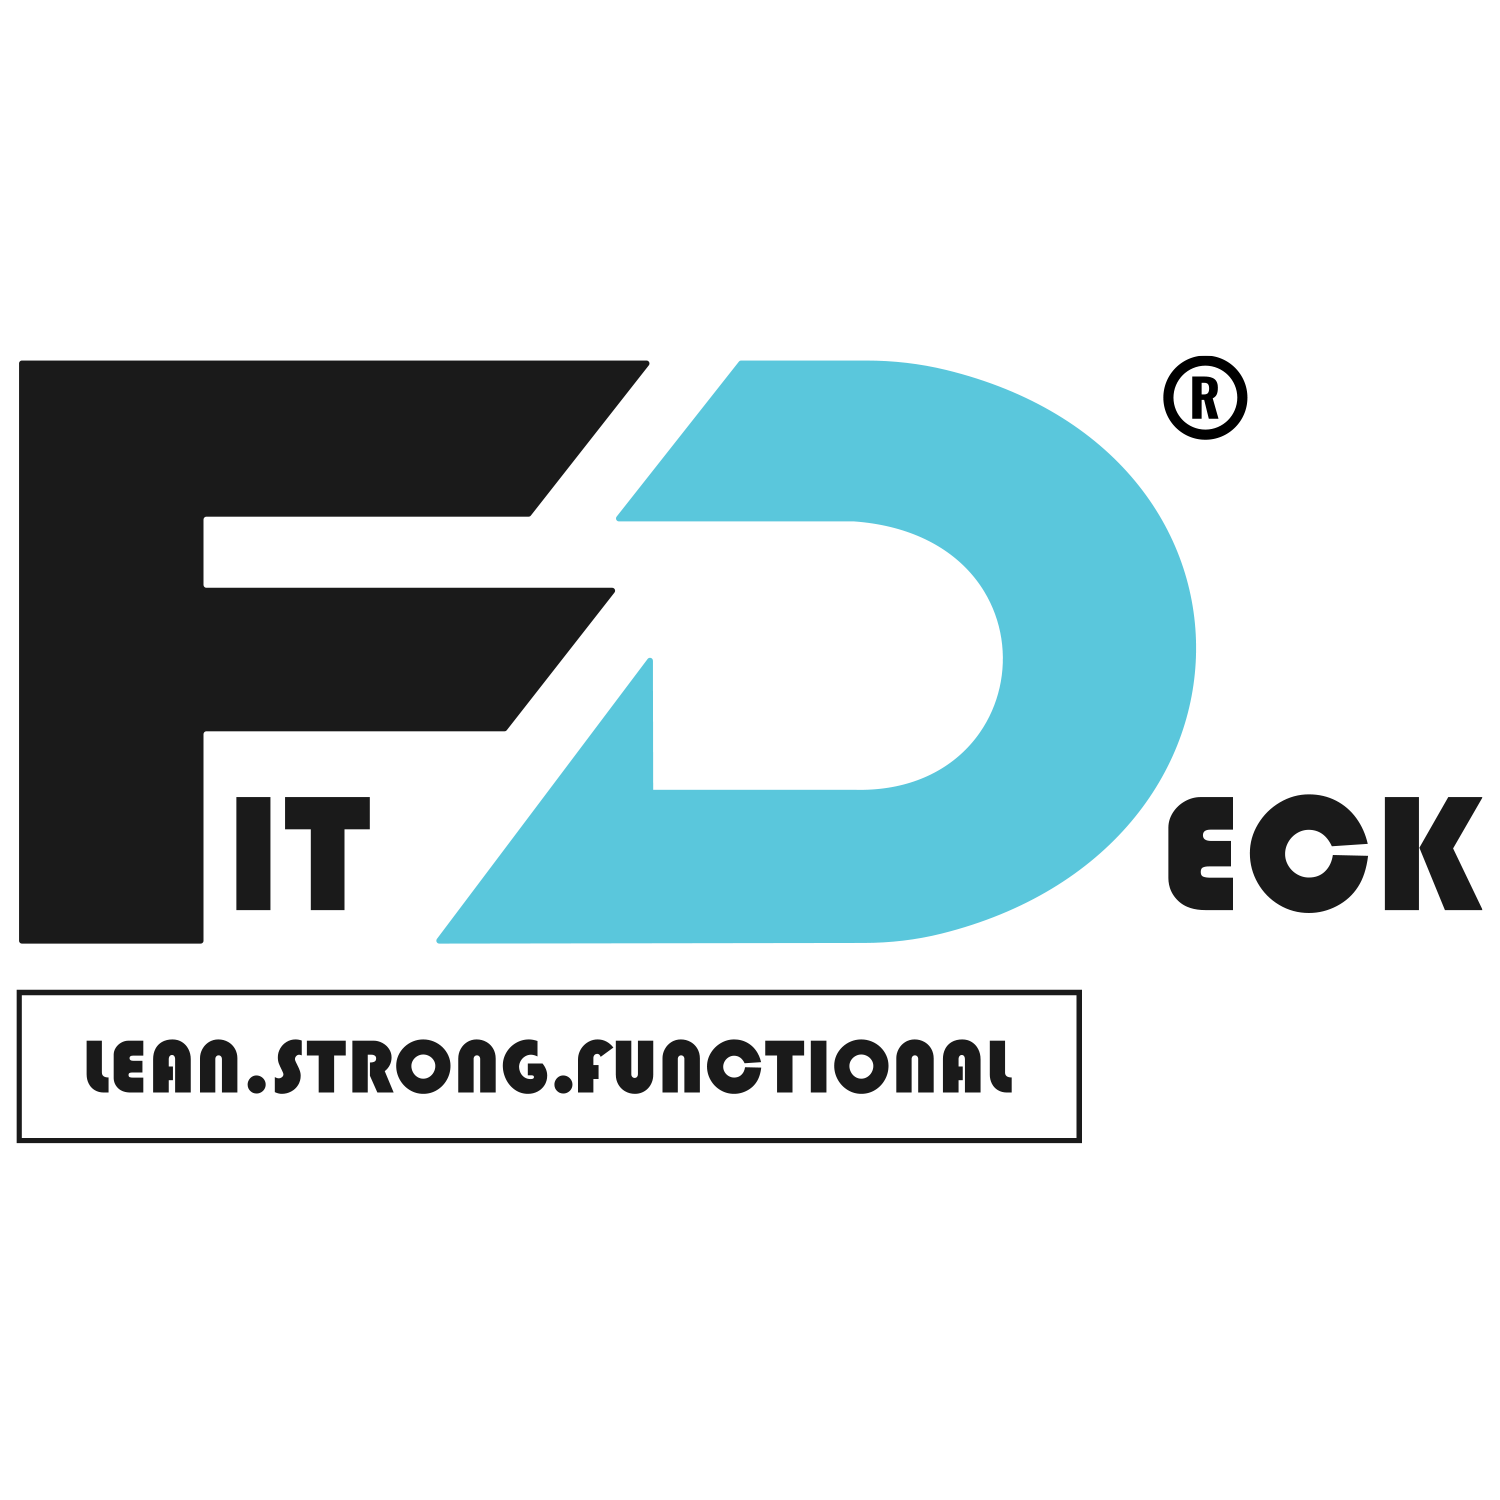 Fit Deck Dark Logo